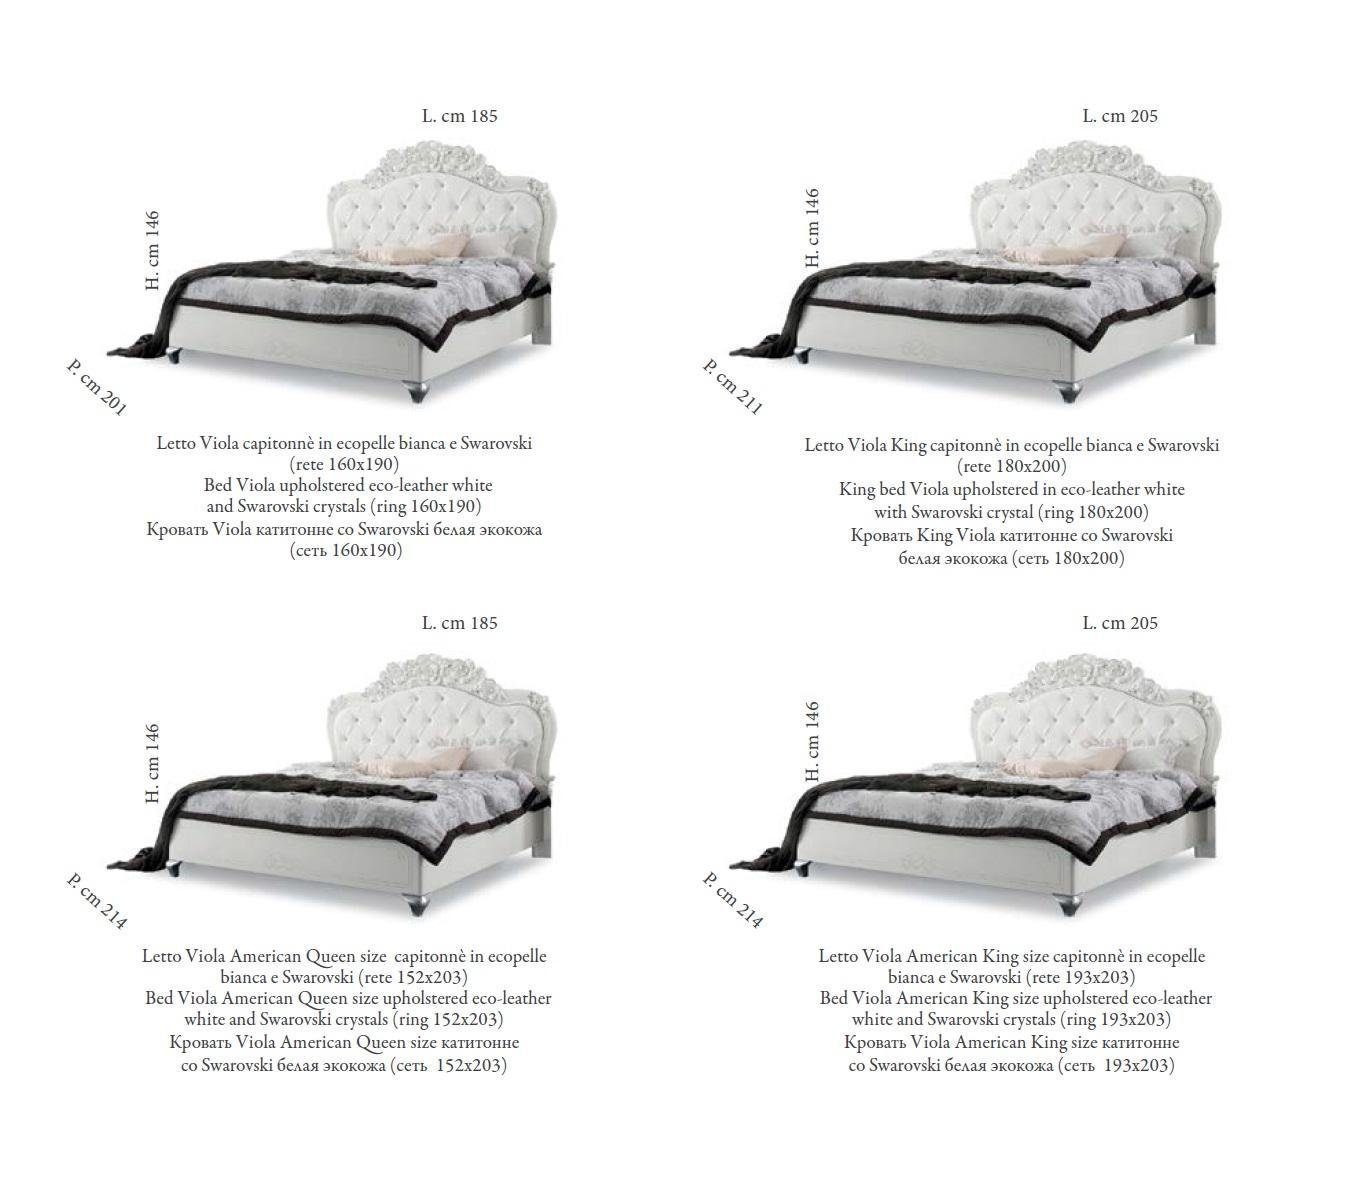 (Bett) Italienische JVmoebel Betten Holz Bett Design déco Stil Möbel Klassische Bett Art